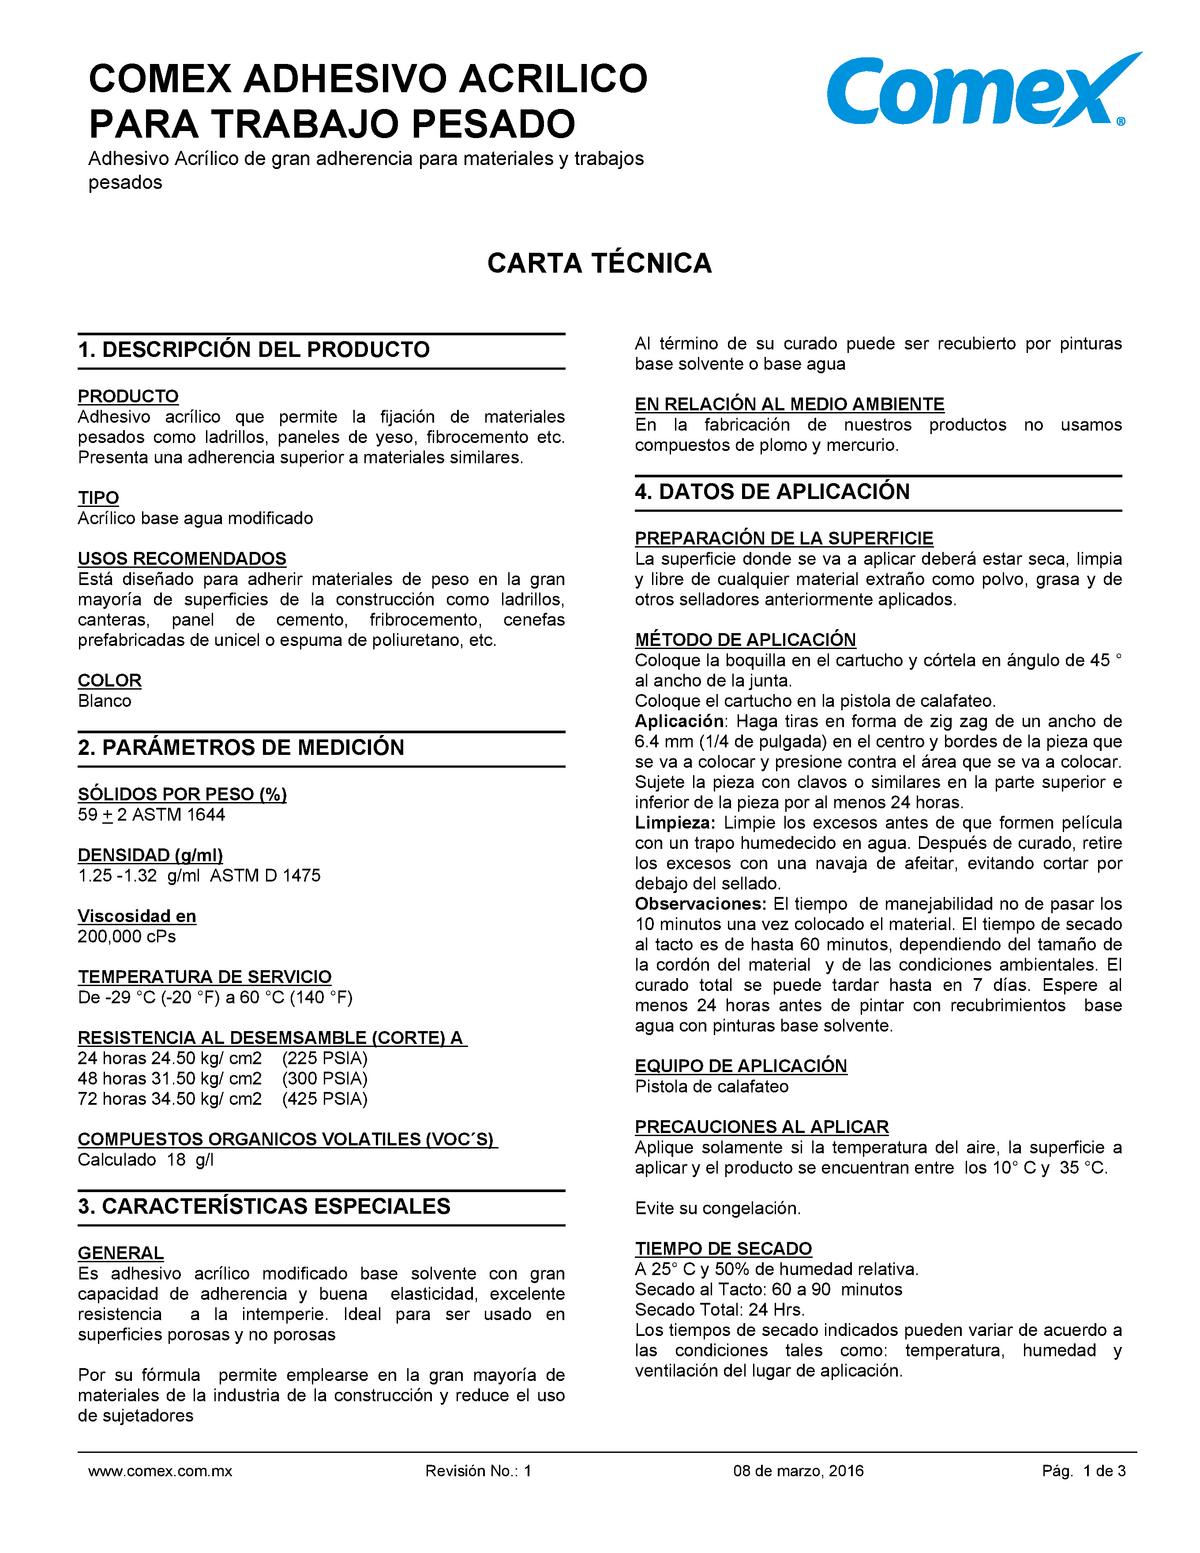 Ct 013374 carta tecnica producto comex - COMEX ADHESIVO ACRILICO PARA  TRABAJO PESADO Adhesivo - Studocu